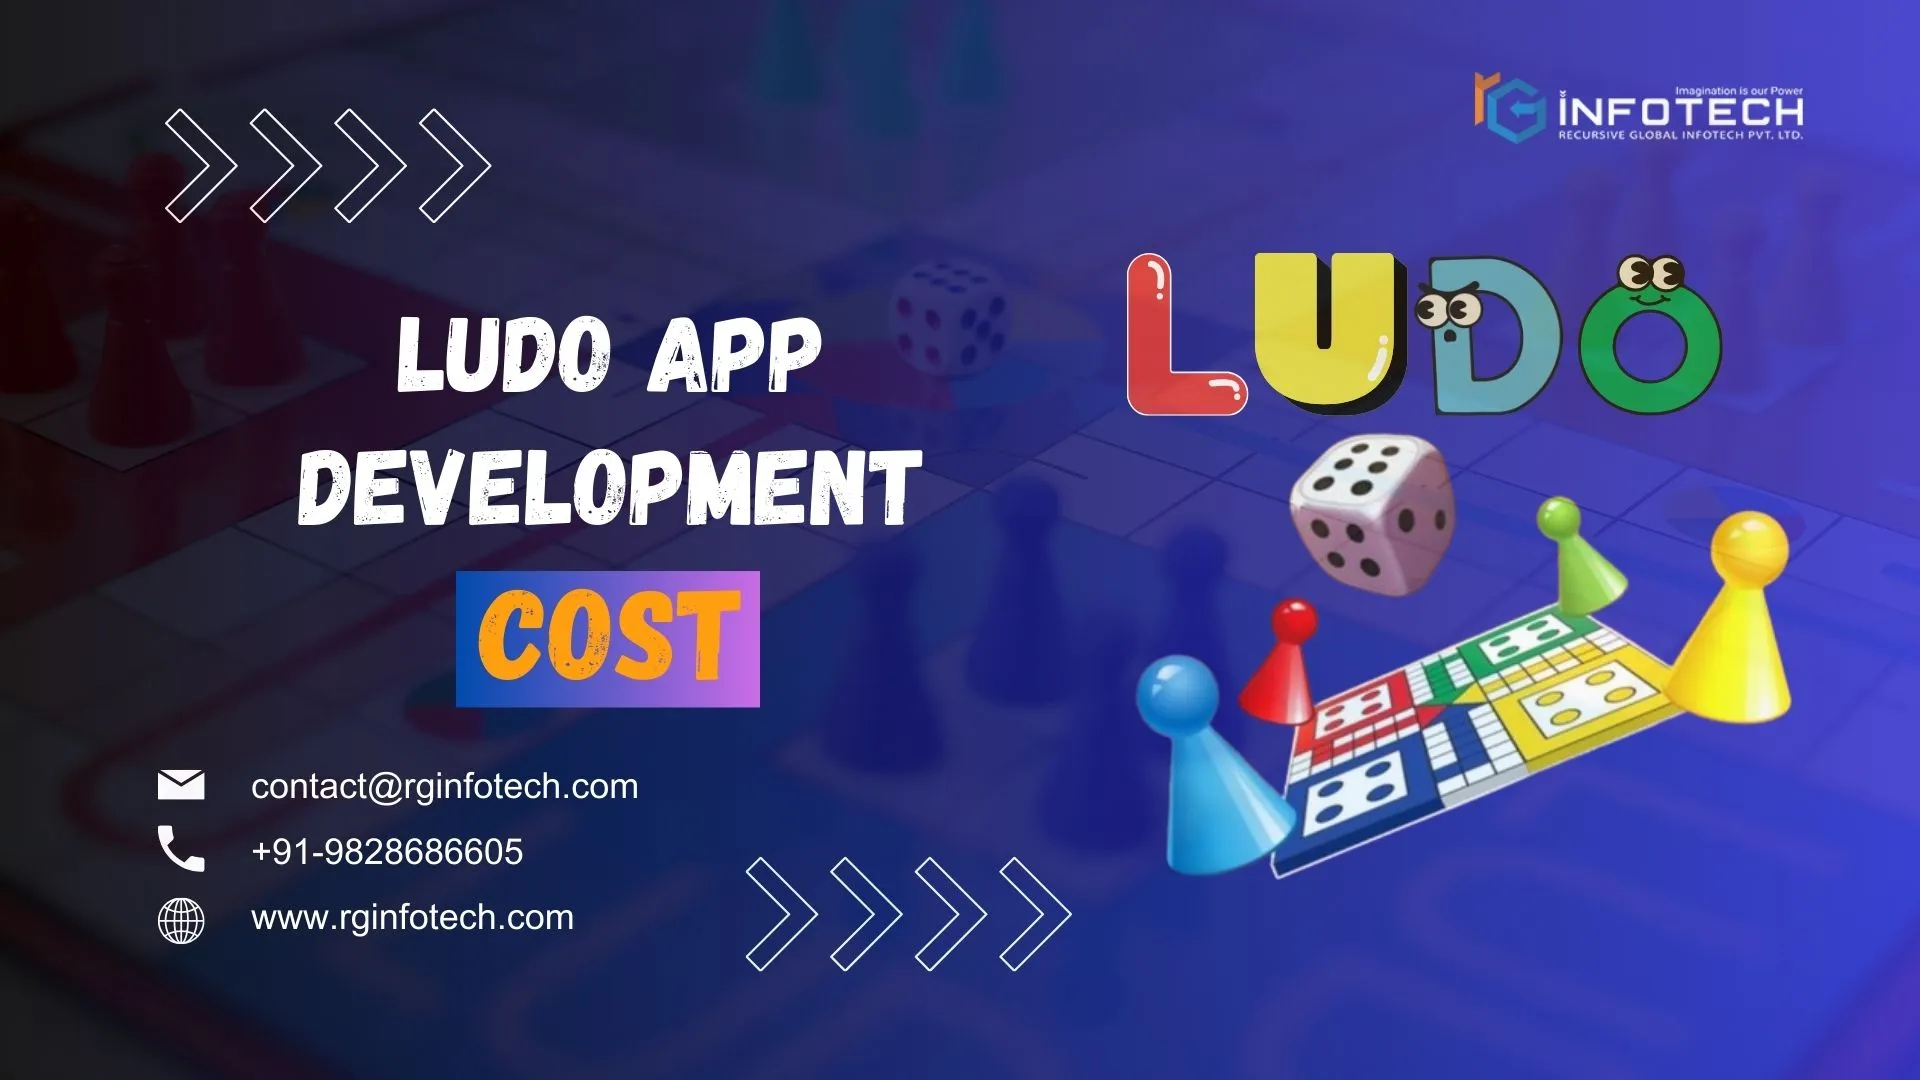 Ludo-App-Development-Cost